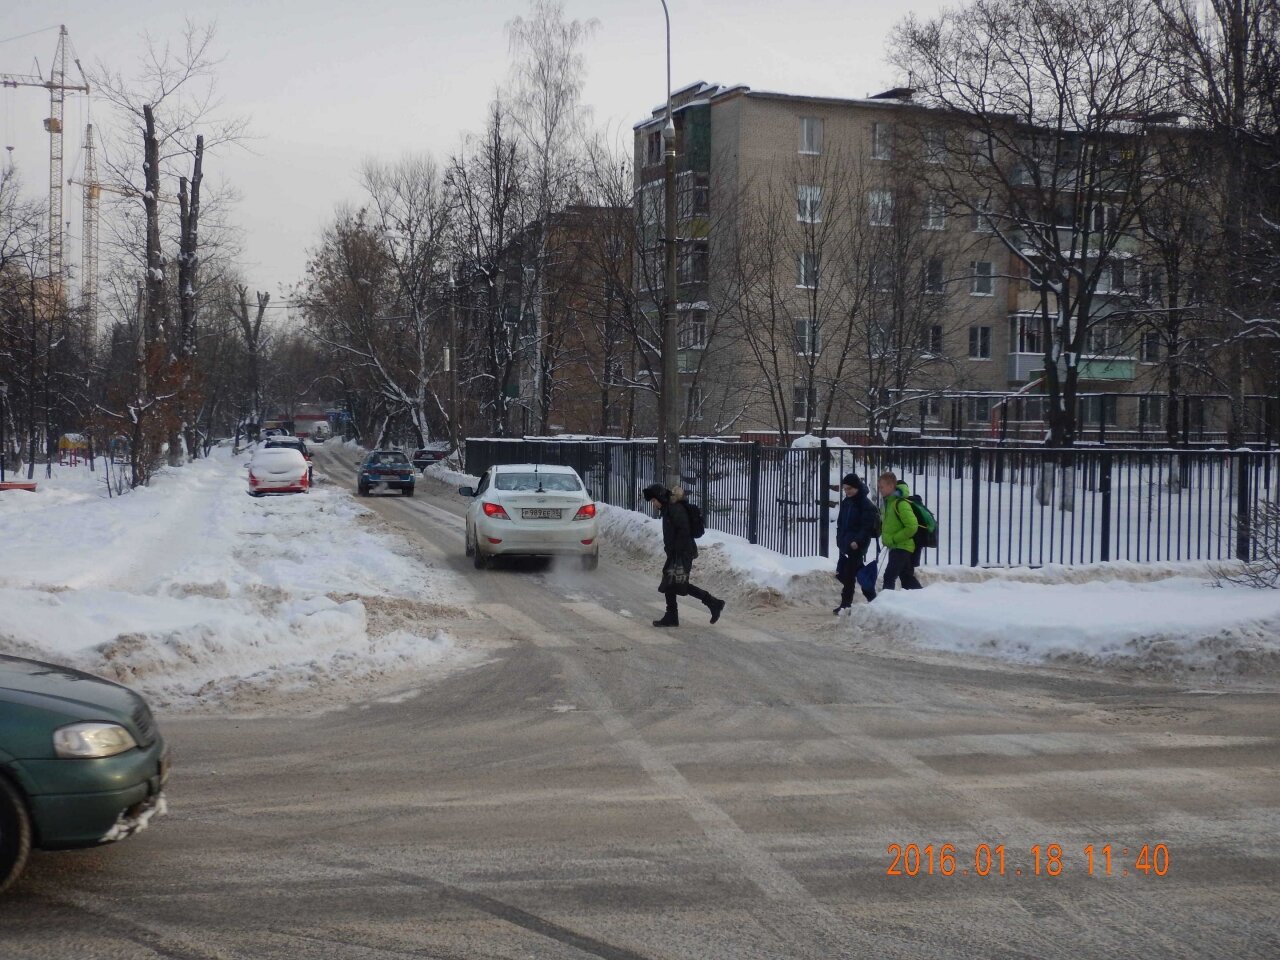 Дети переходят дорогу на пешеходном переходе, знаки еще не были установлены, Ивантеевка, Подмосковье